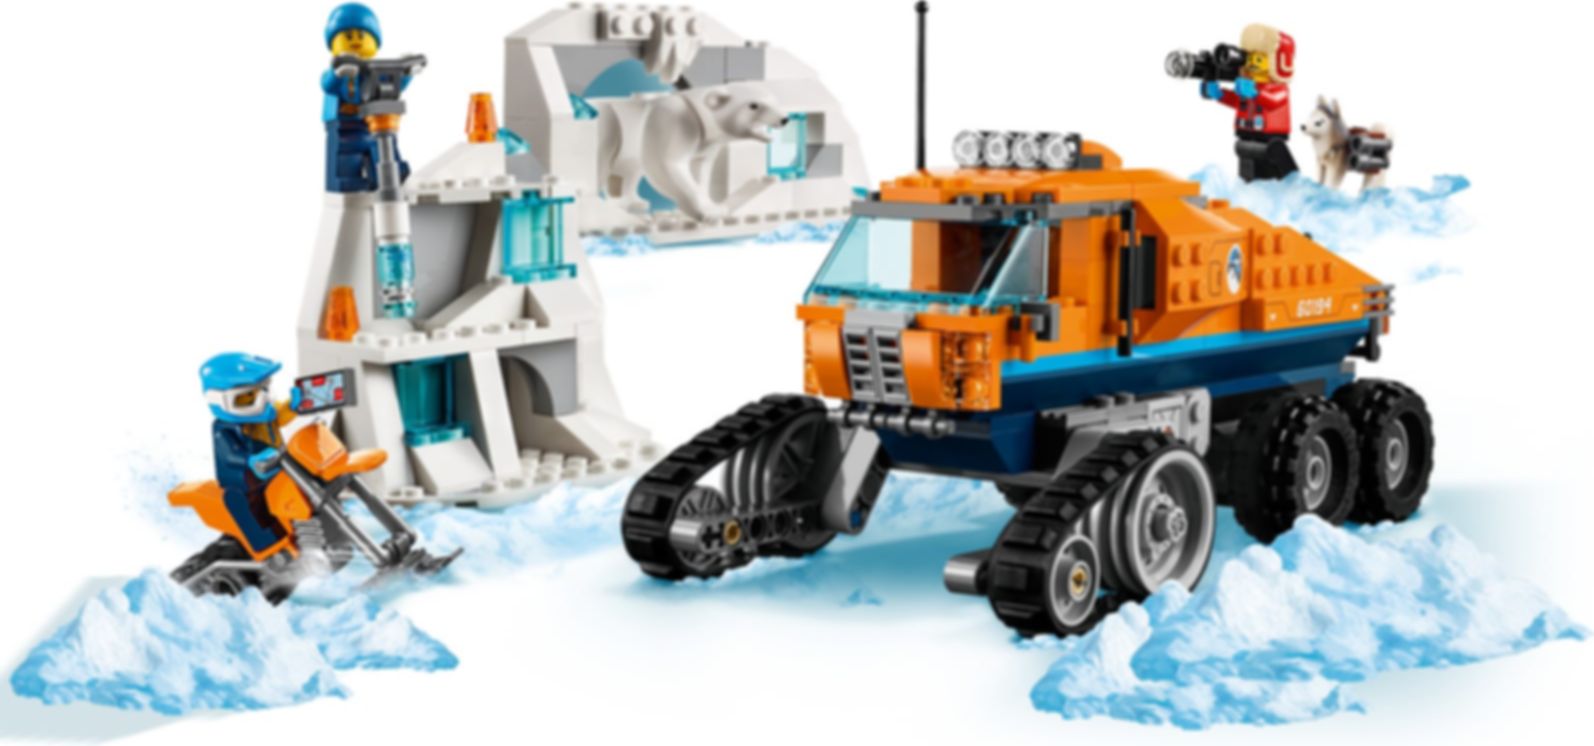 Los precios hoy para City Ártico: Vehículo de exploración ToyBricksFinder